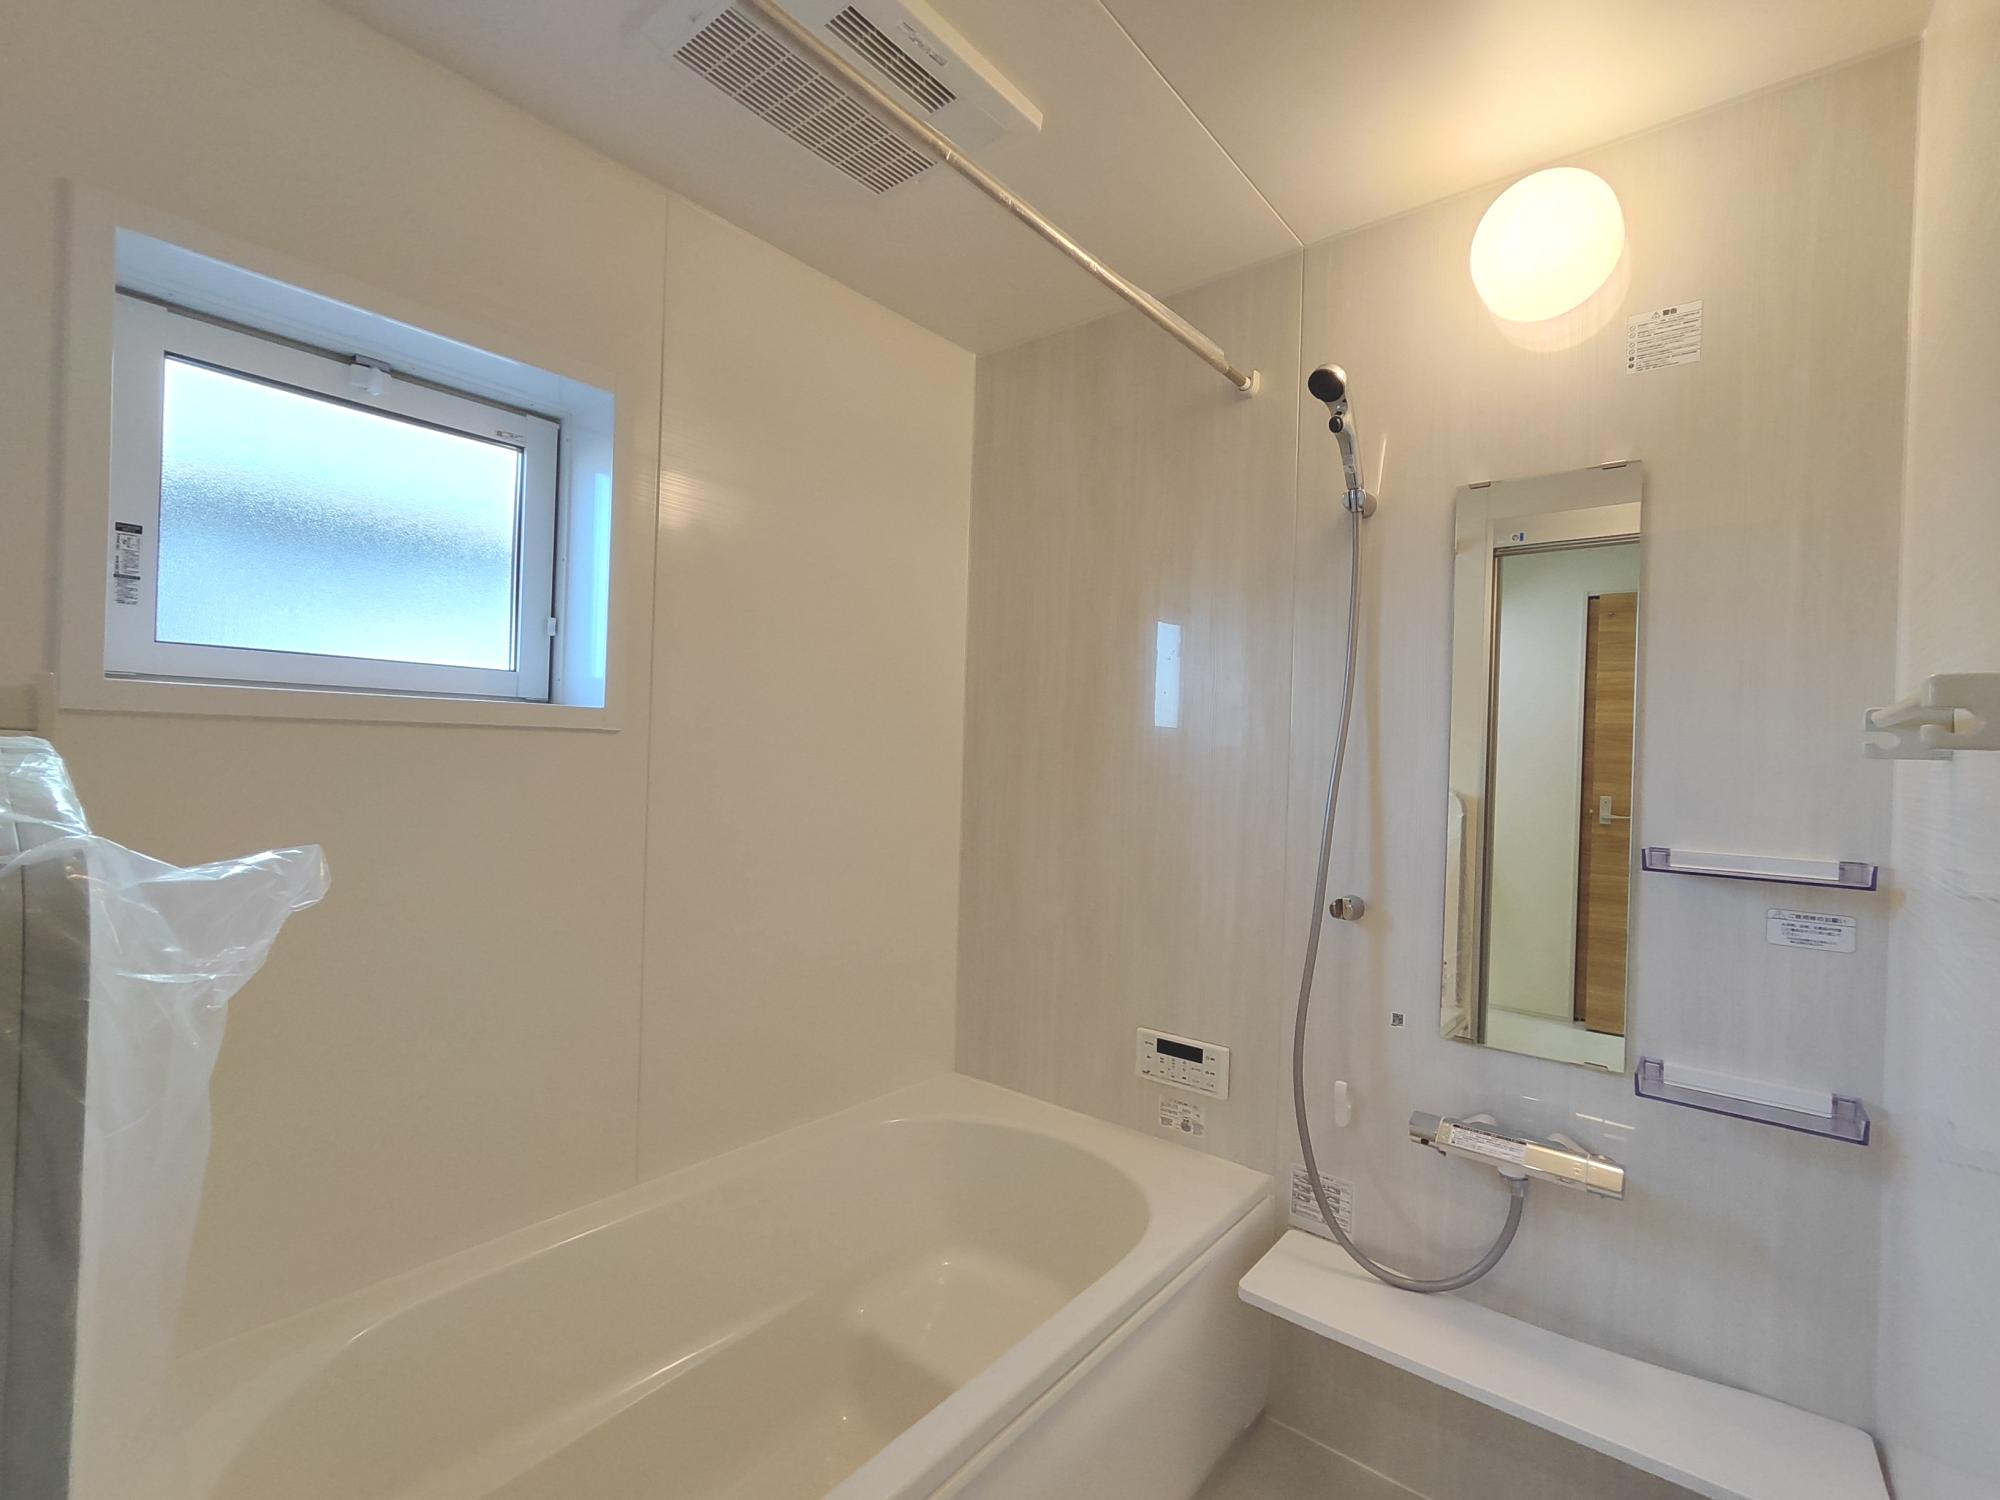 【2号棟】　アクセントクロス採用した浴室はオシャレで、一日の疲れが癒される空間に。高断熱浴槽を採用し、4時間たっても湯温低下は2.5℃以下なので光熱費の節約にもなります。